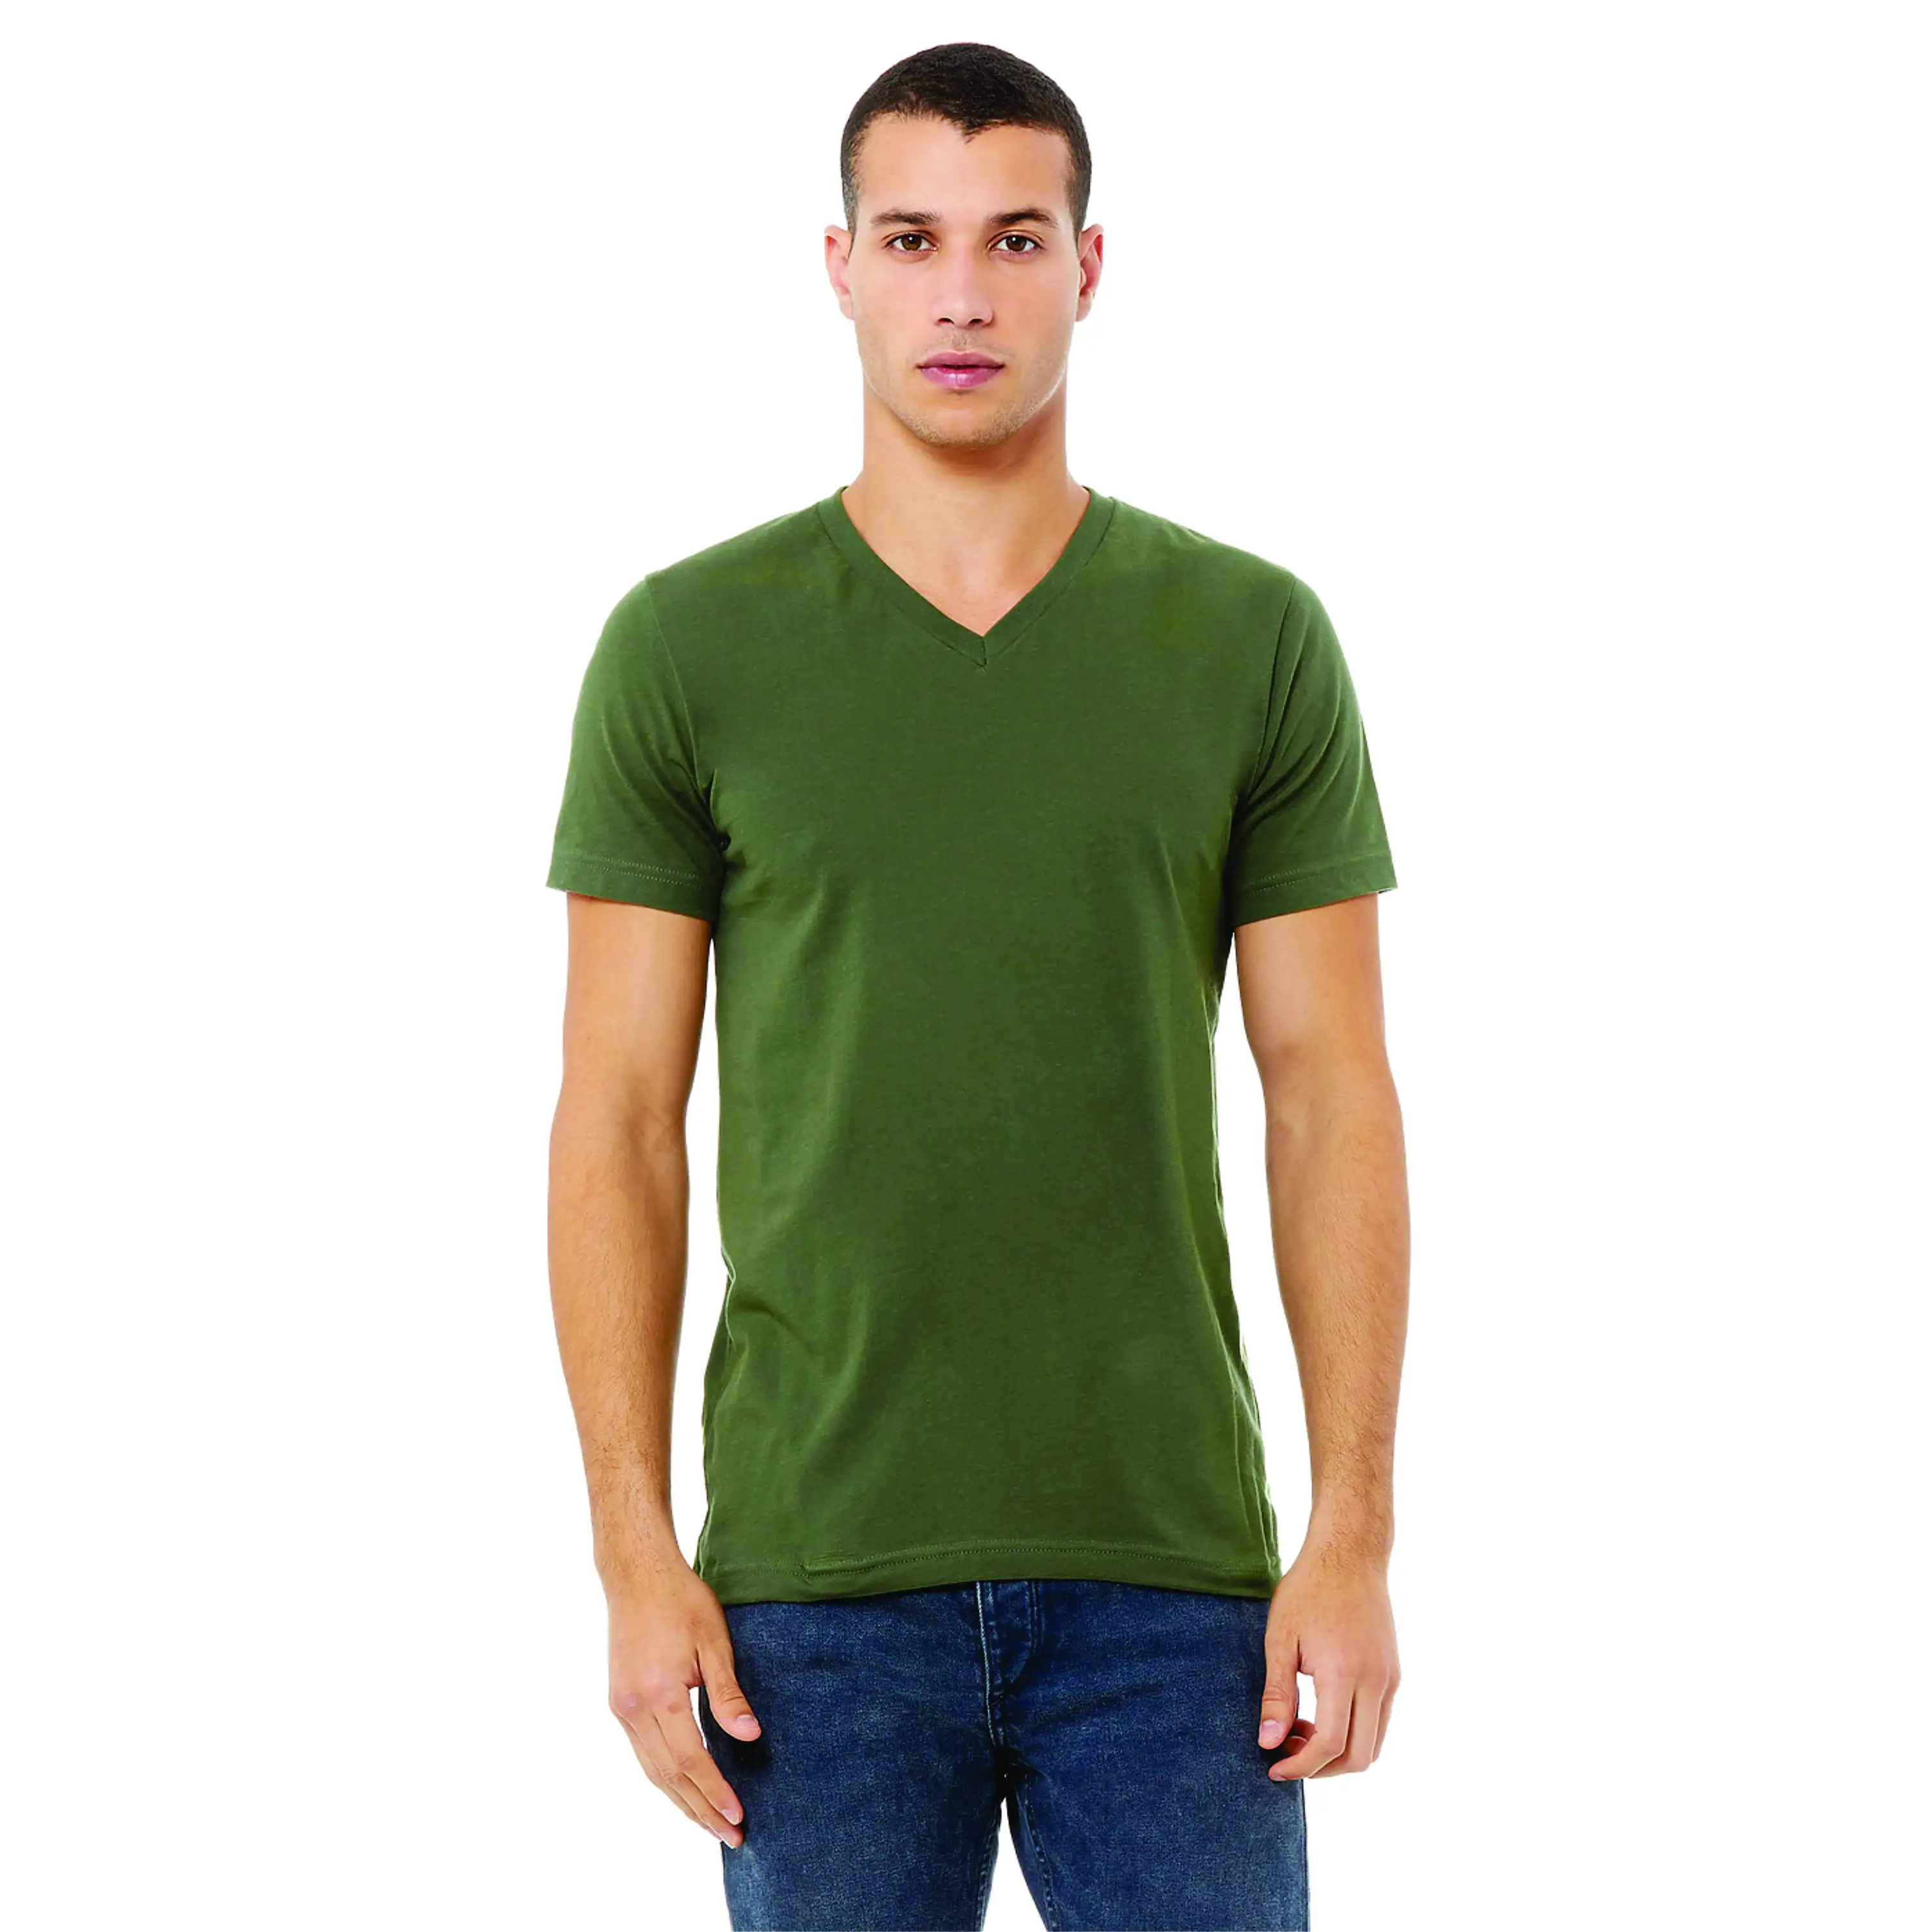 100% Airlume pettinato e Ring Spun Cotton 32 Single 4.2 oz Military Green Essential t-shirt Unisex a maniche corte con scollo a v